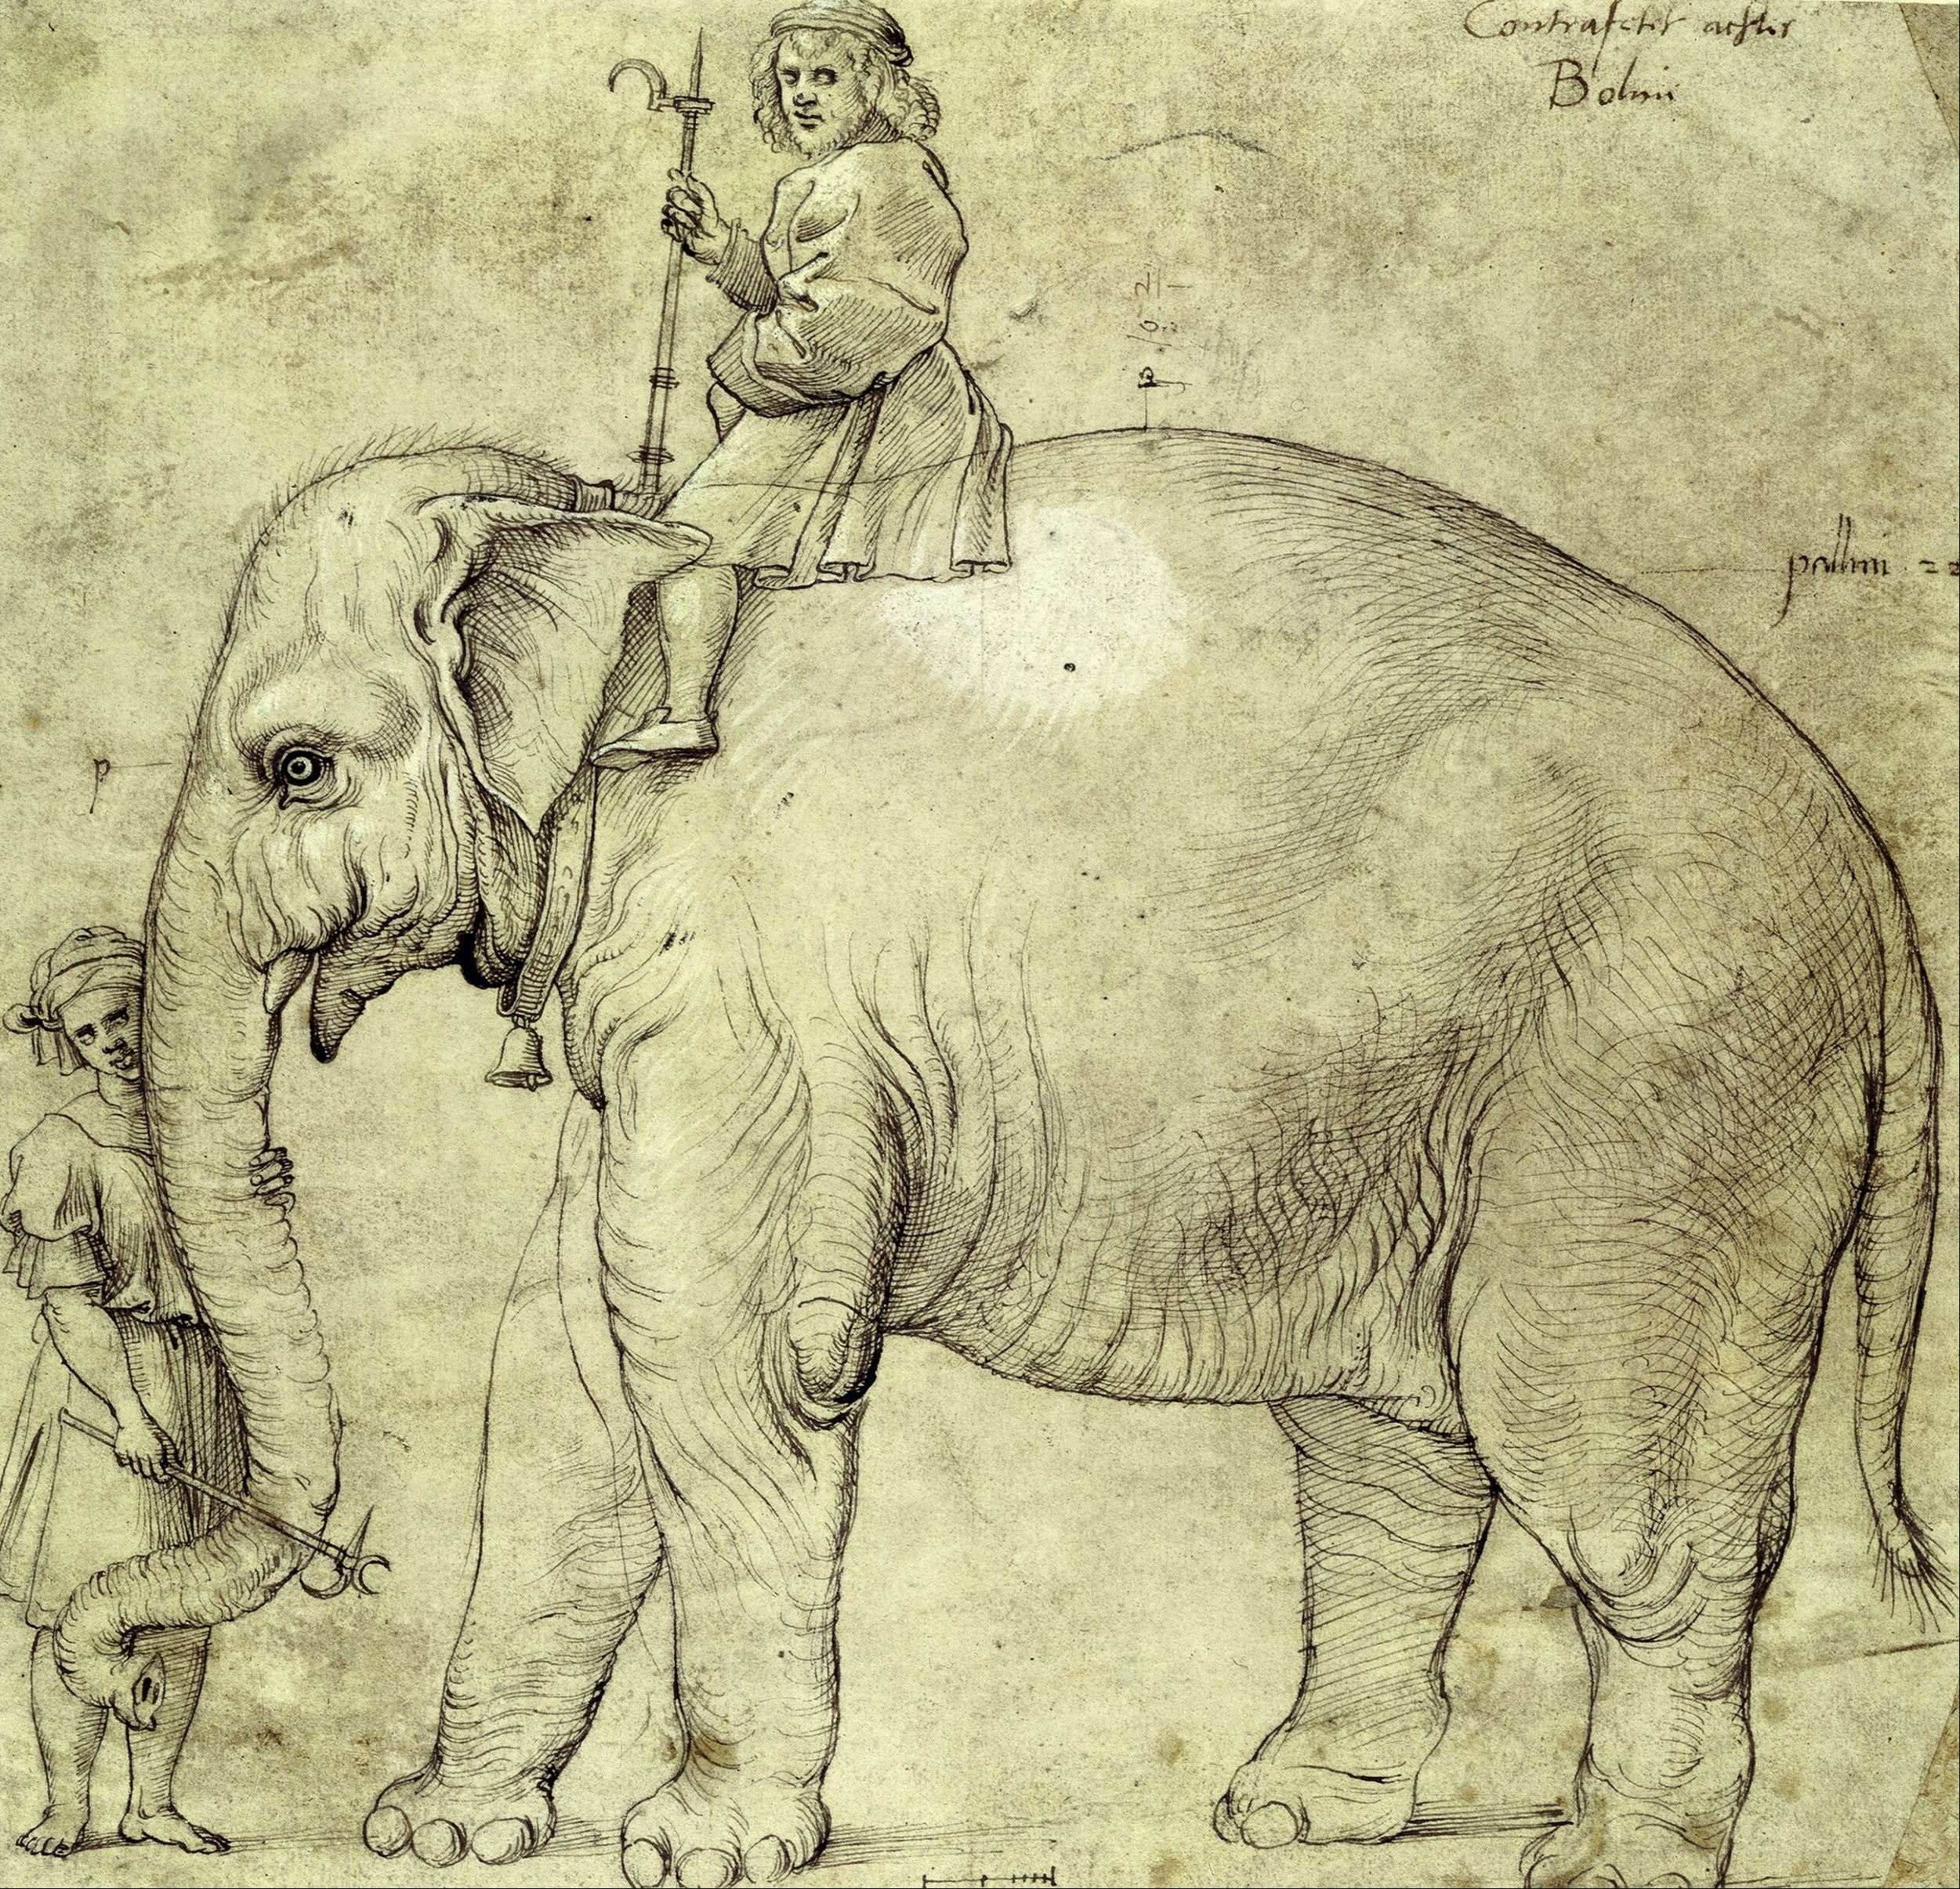 El elefante Hanno by La escuela de Rafael Sanzio - 1516 Kupferstichkabinett, National Museums in Berlin